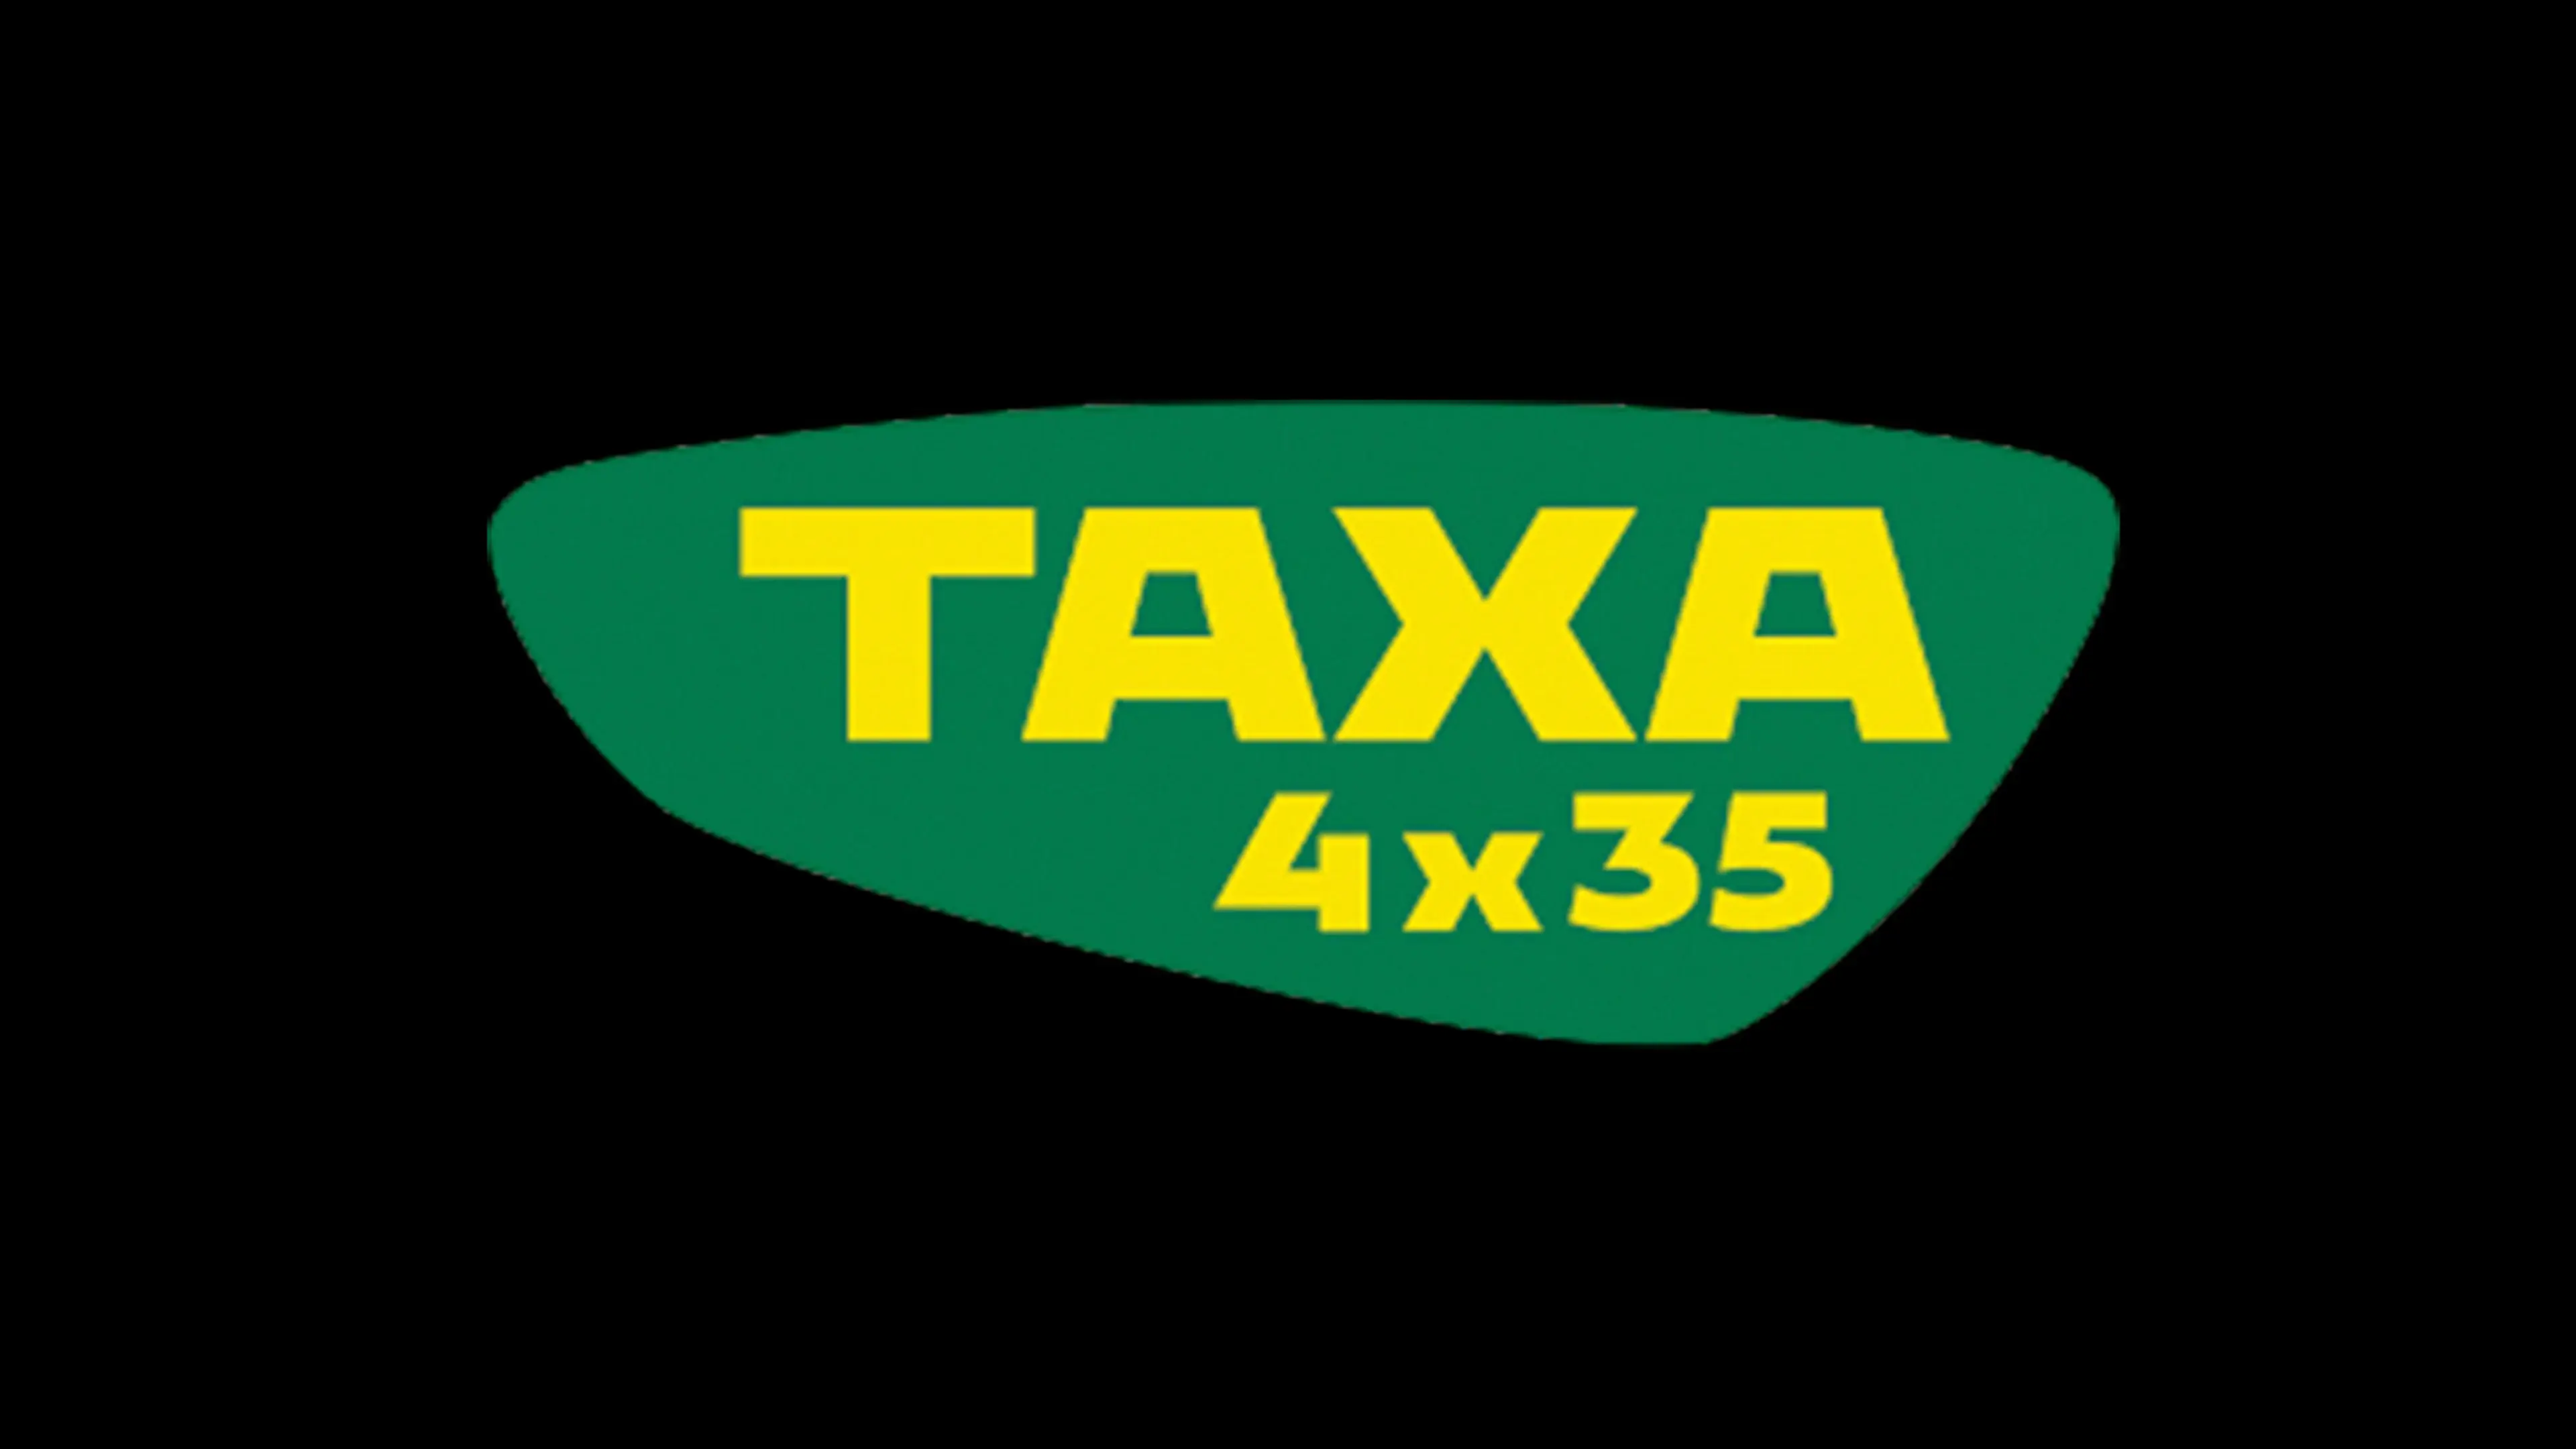 Taxa 4x35